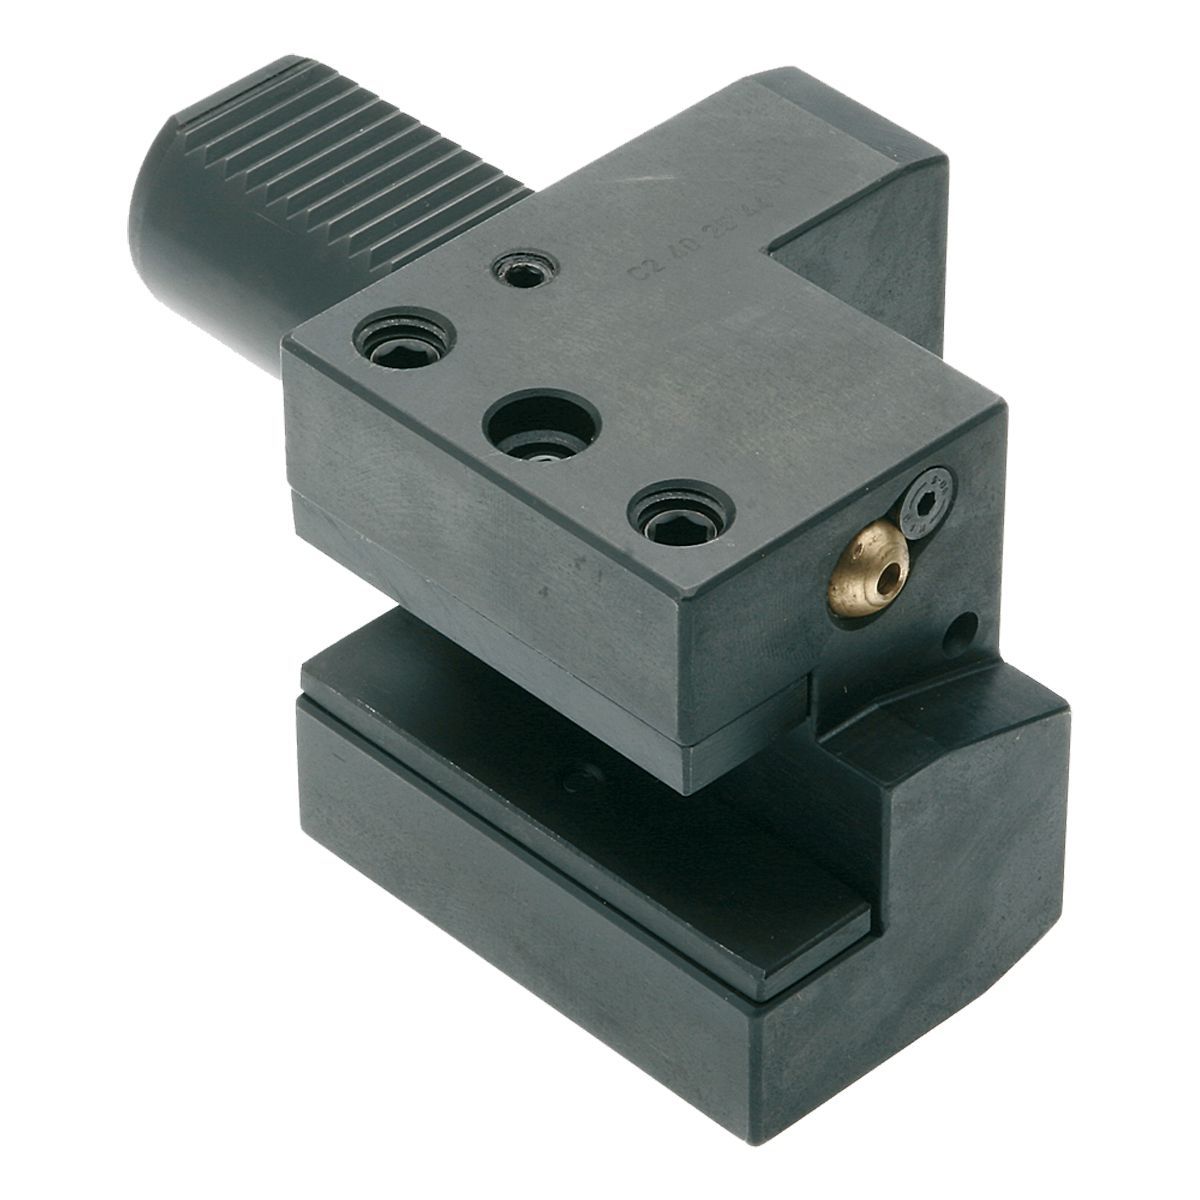 Axial-Werkzeughalter C2-40x25 DIN 69880 (ISO 10889)